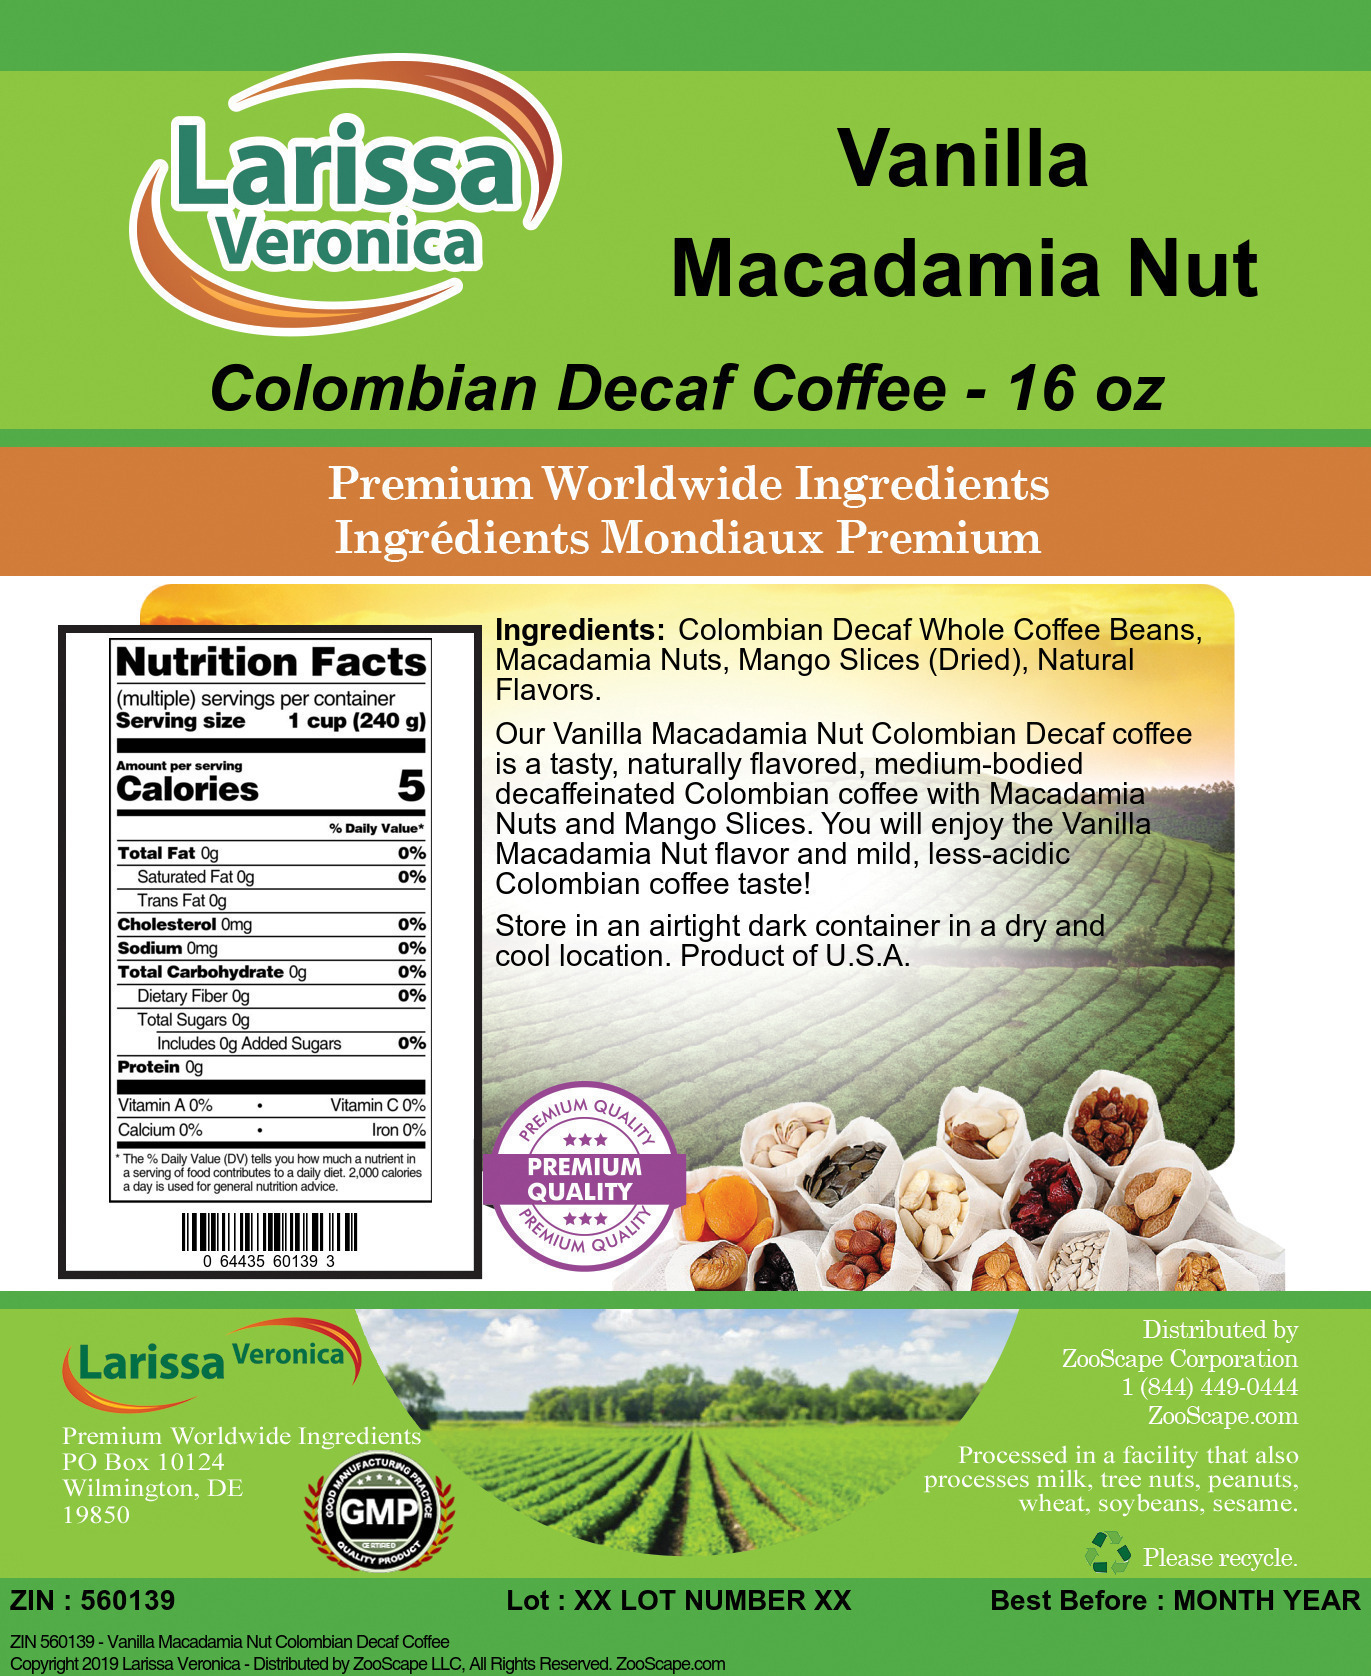 Vanilla Macadamia Nut Colombian Decaf Coffee - Label